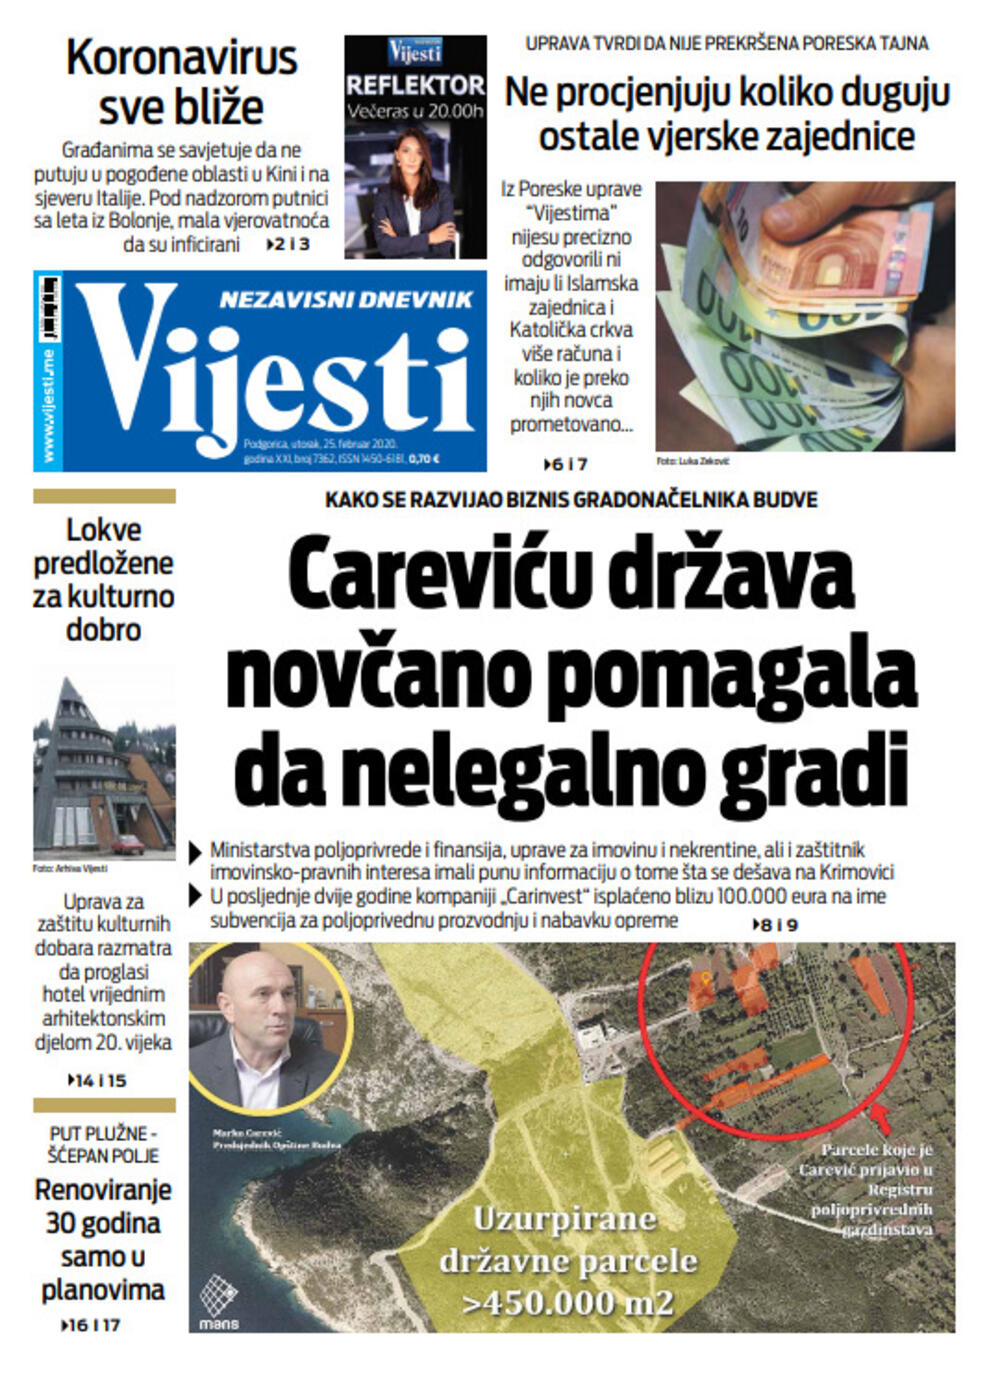 Naslovna strana "Vijesti" za 25. februar 2020. godine, Foto: "Vijesti"